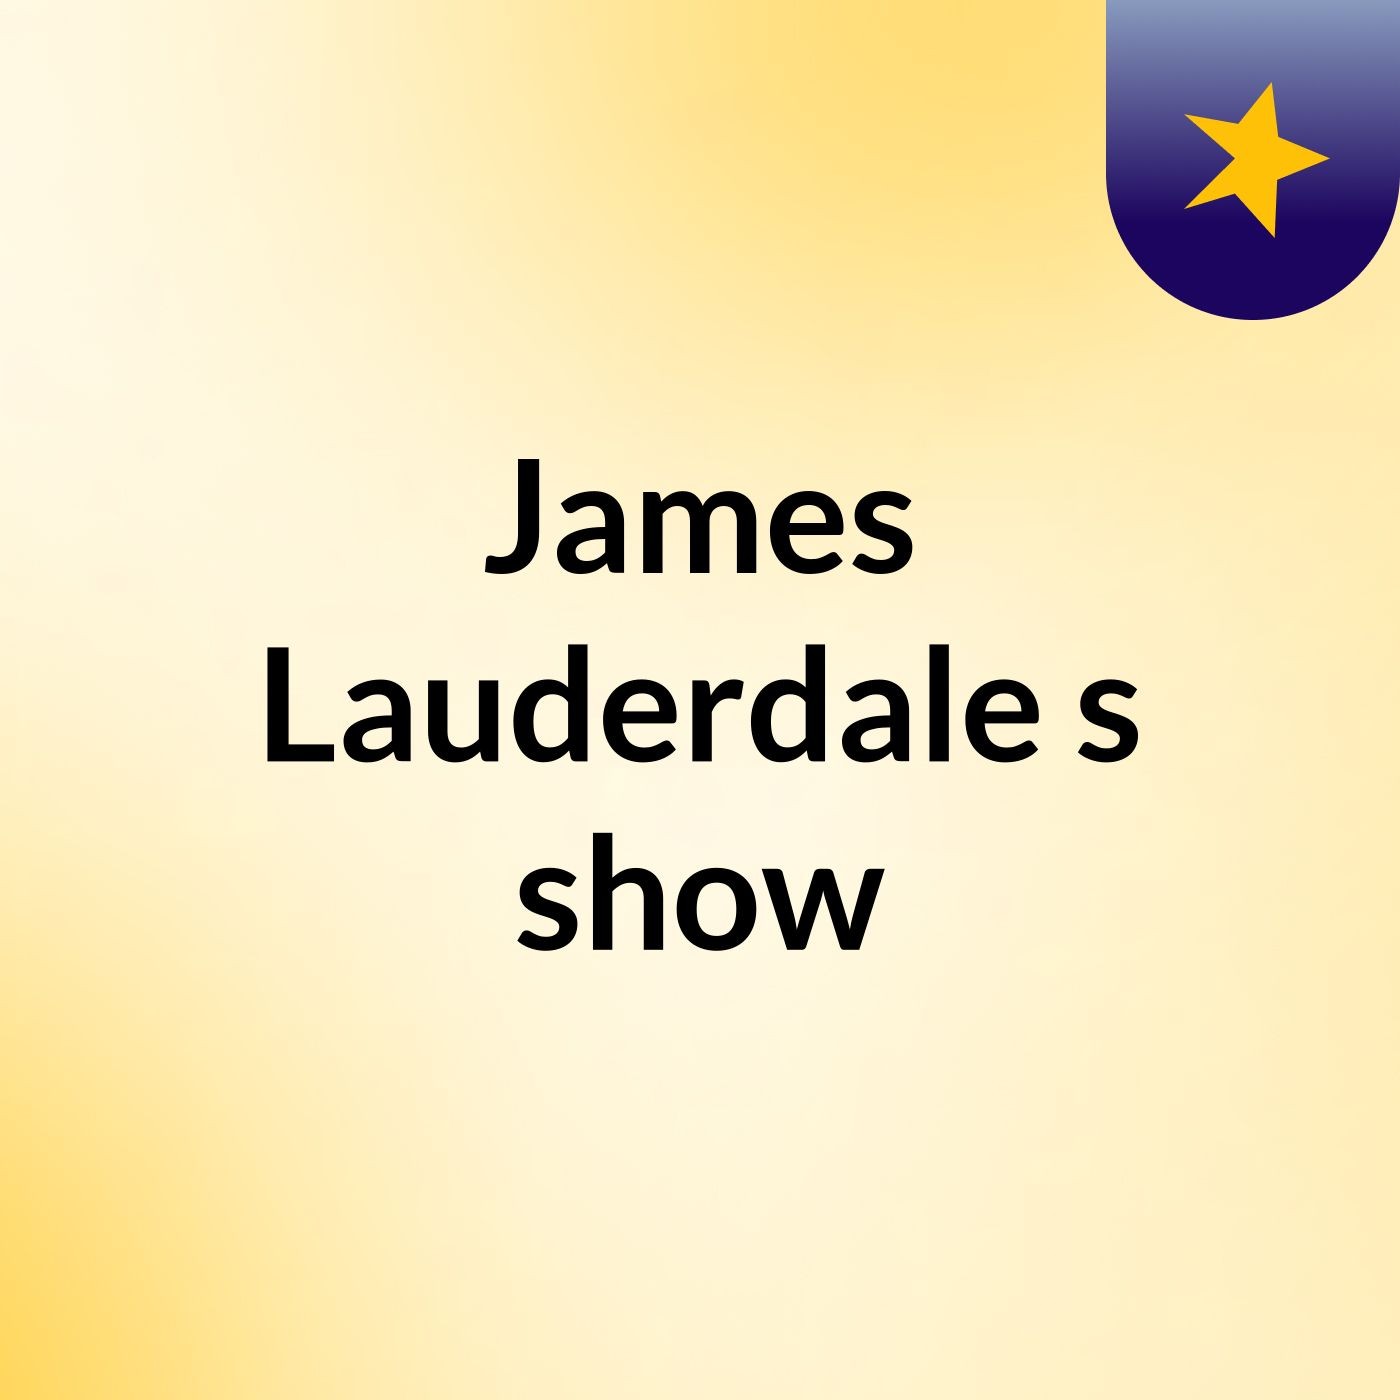 James Lauderdale's show